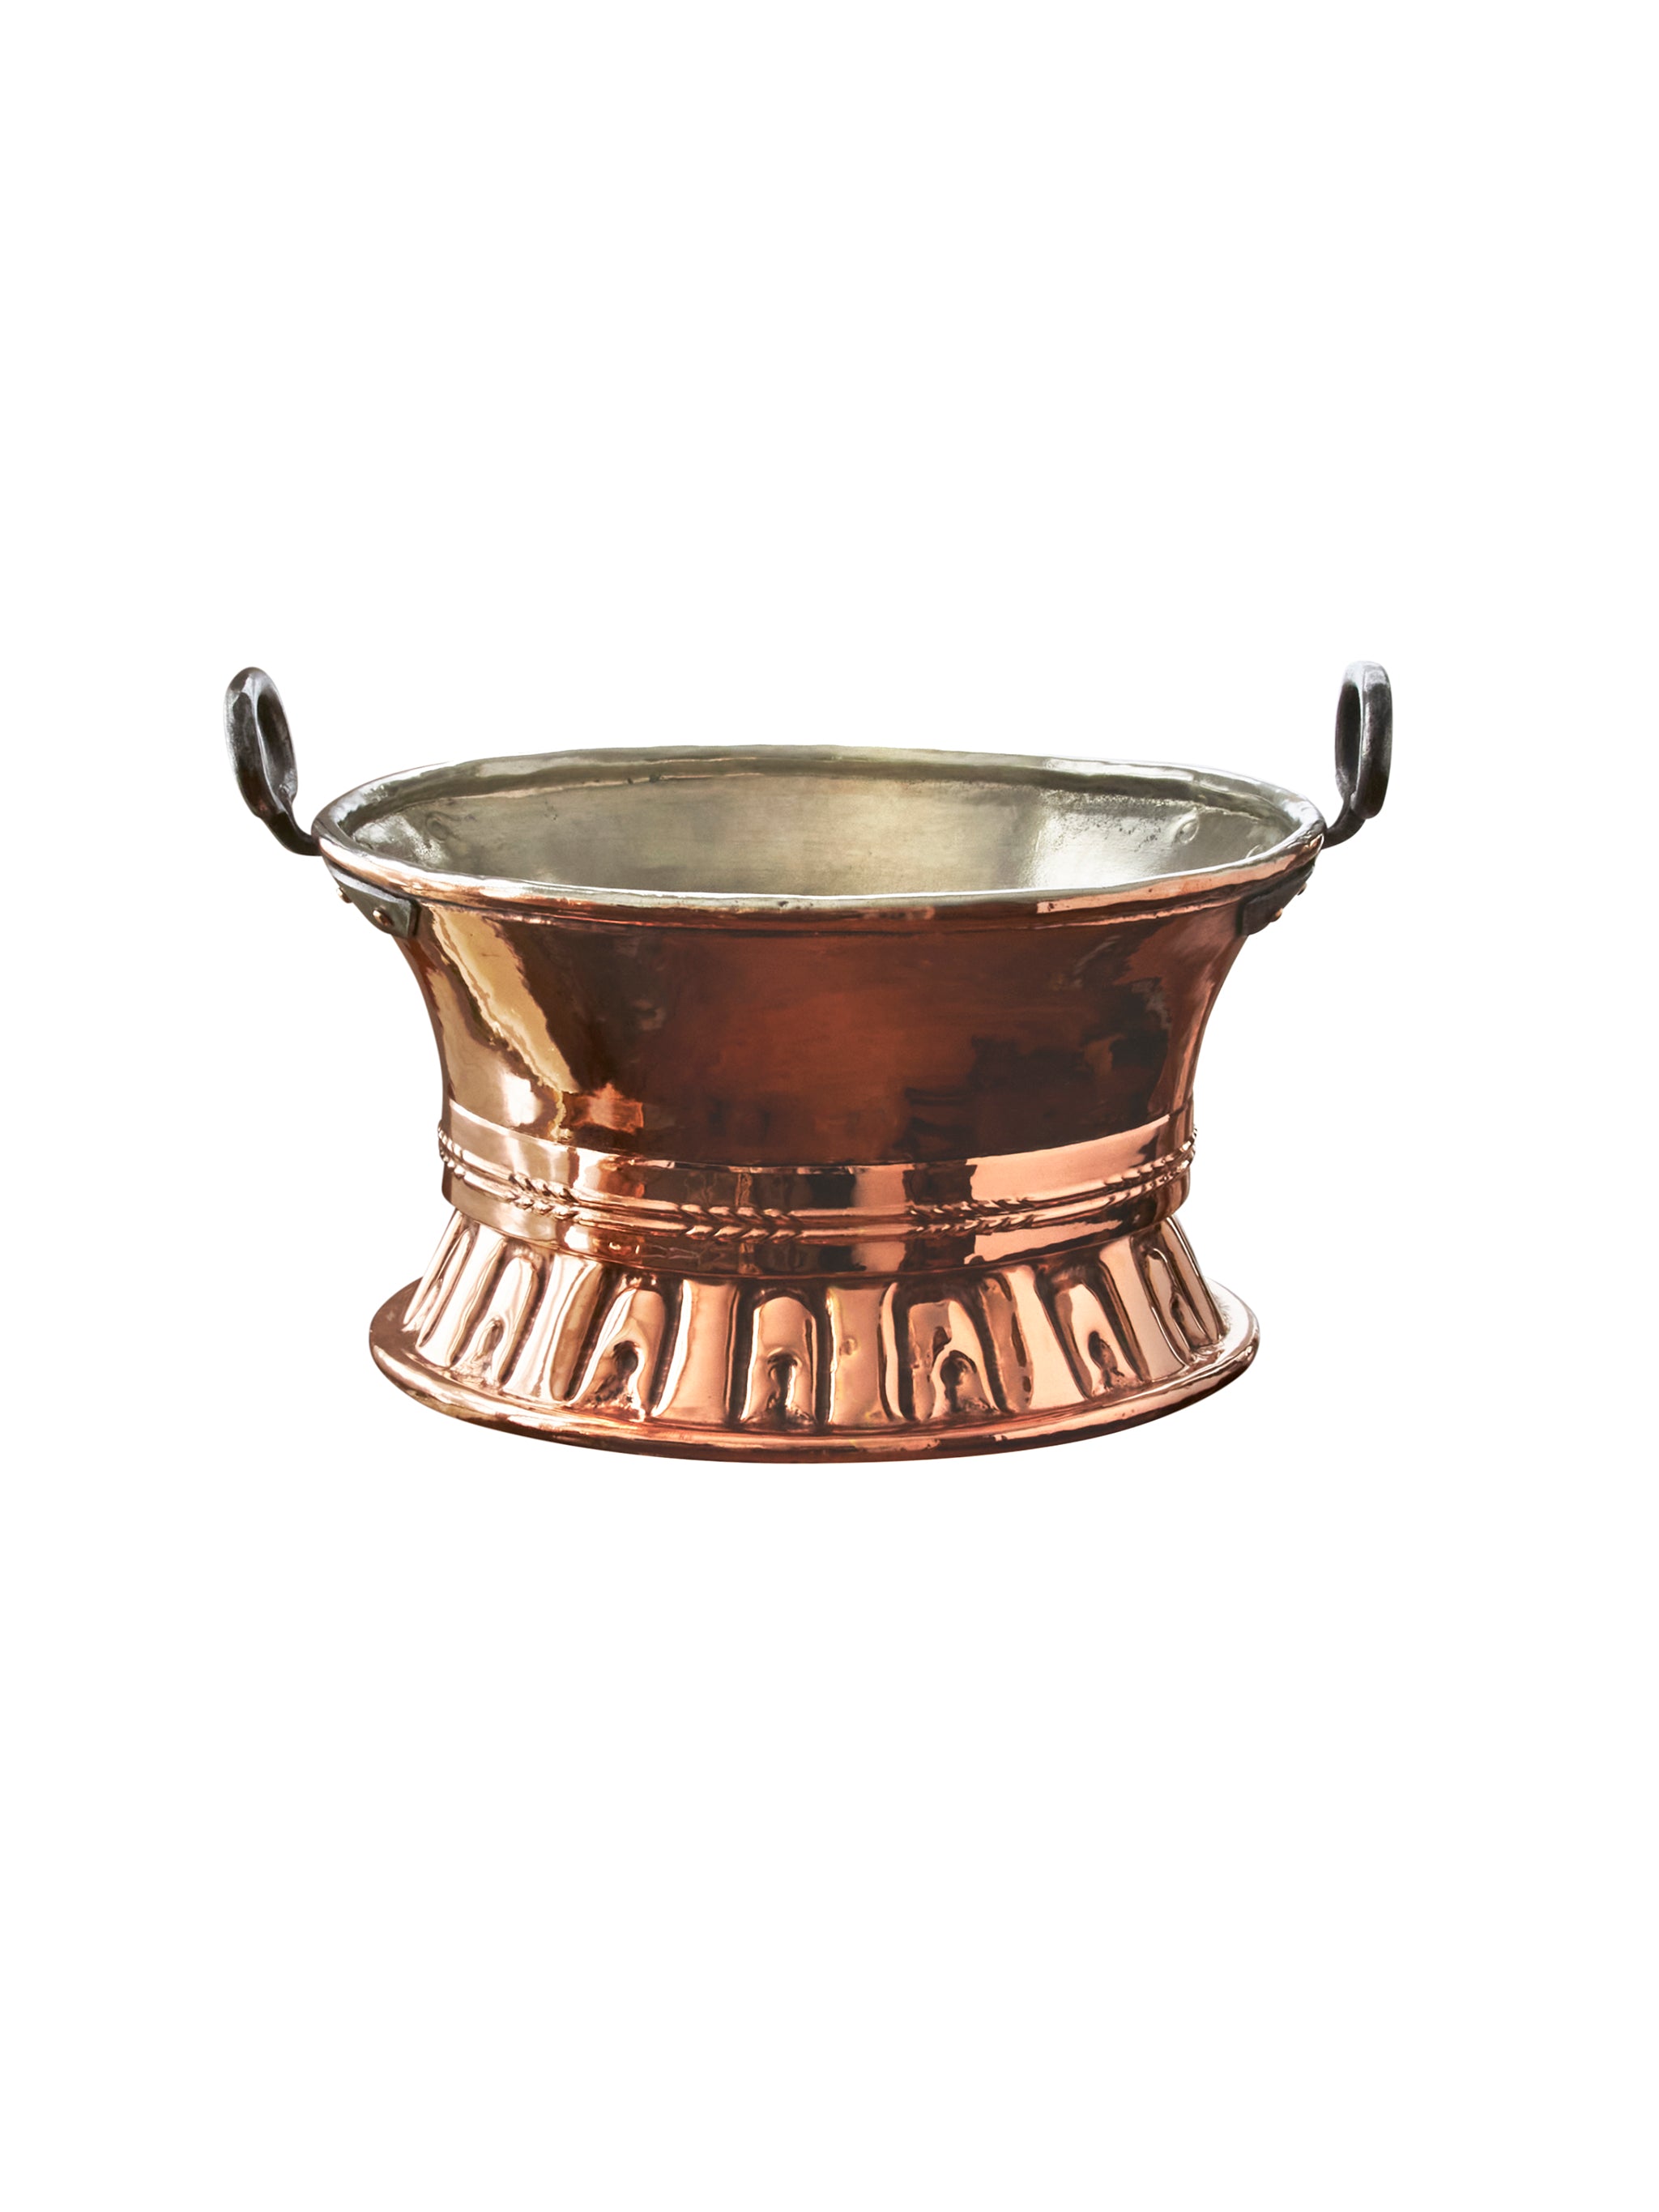 https://westontable.com/cdn/shop/files/Vintage-1870s-French-Large-Copper-Handled-Colander-Weston-Table-SP-1.jpg?v=1697235500